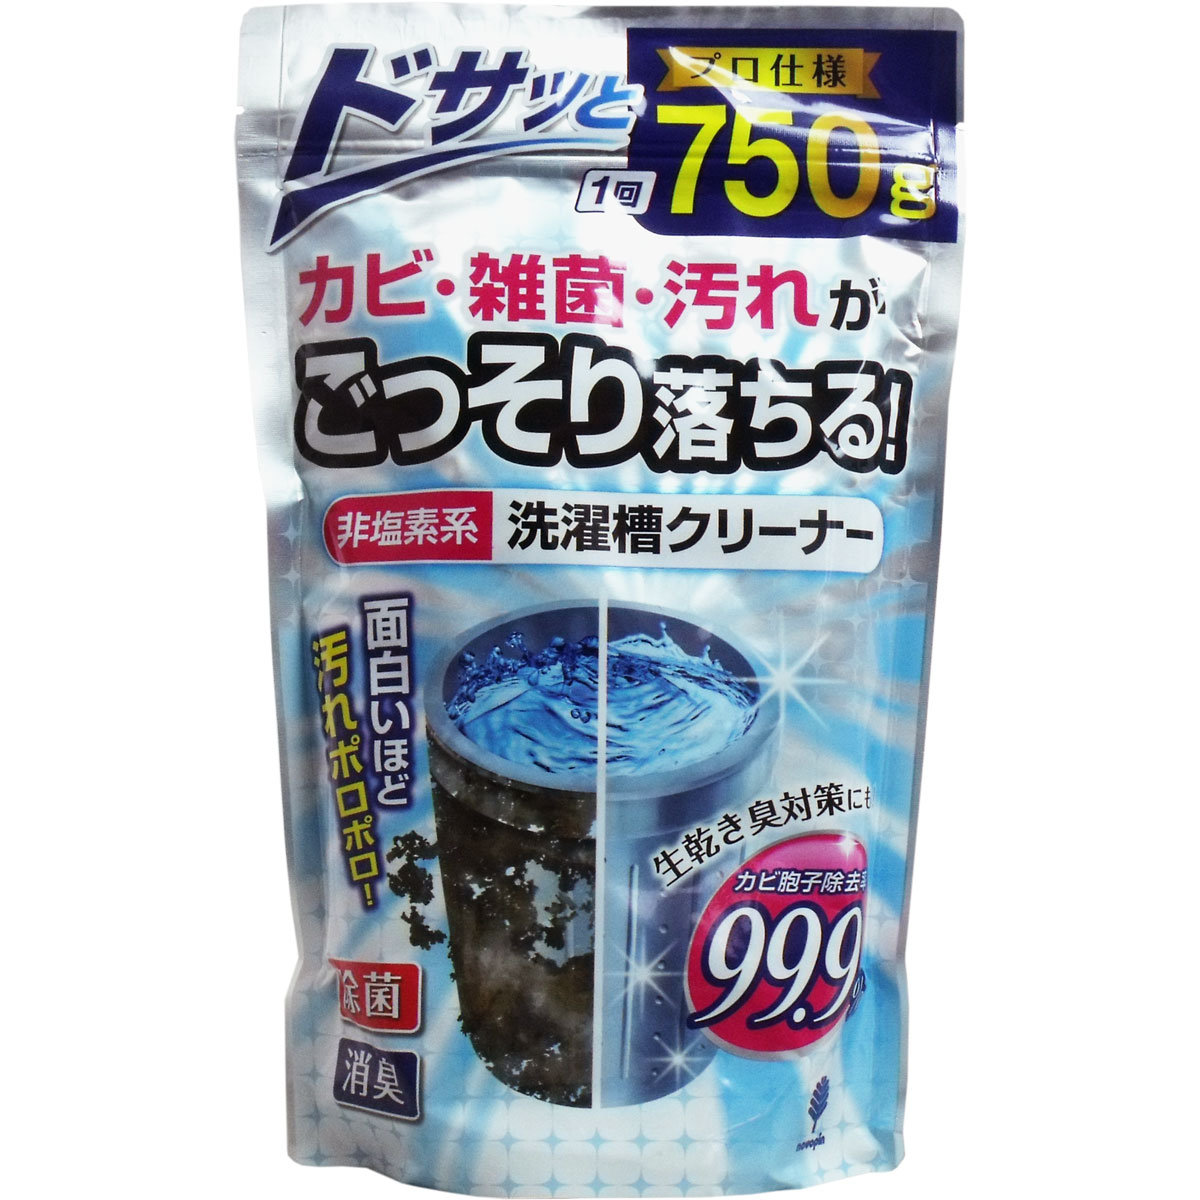 【3個】紀陽除虫菊 非塩素系 洗濯槽クリーナー 750g 2